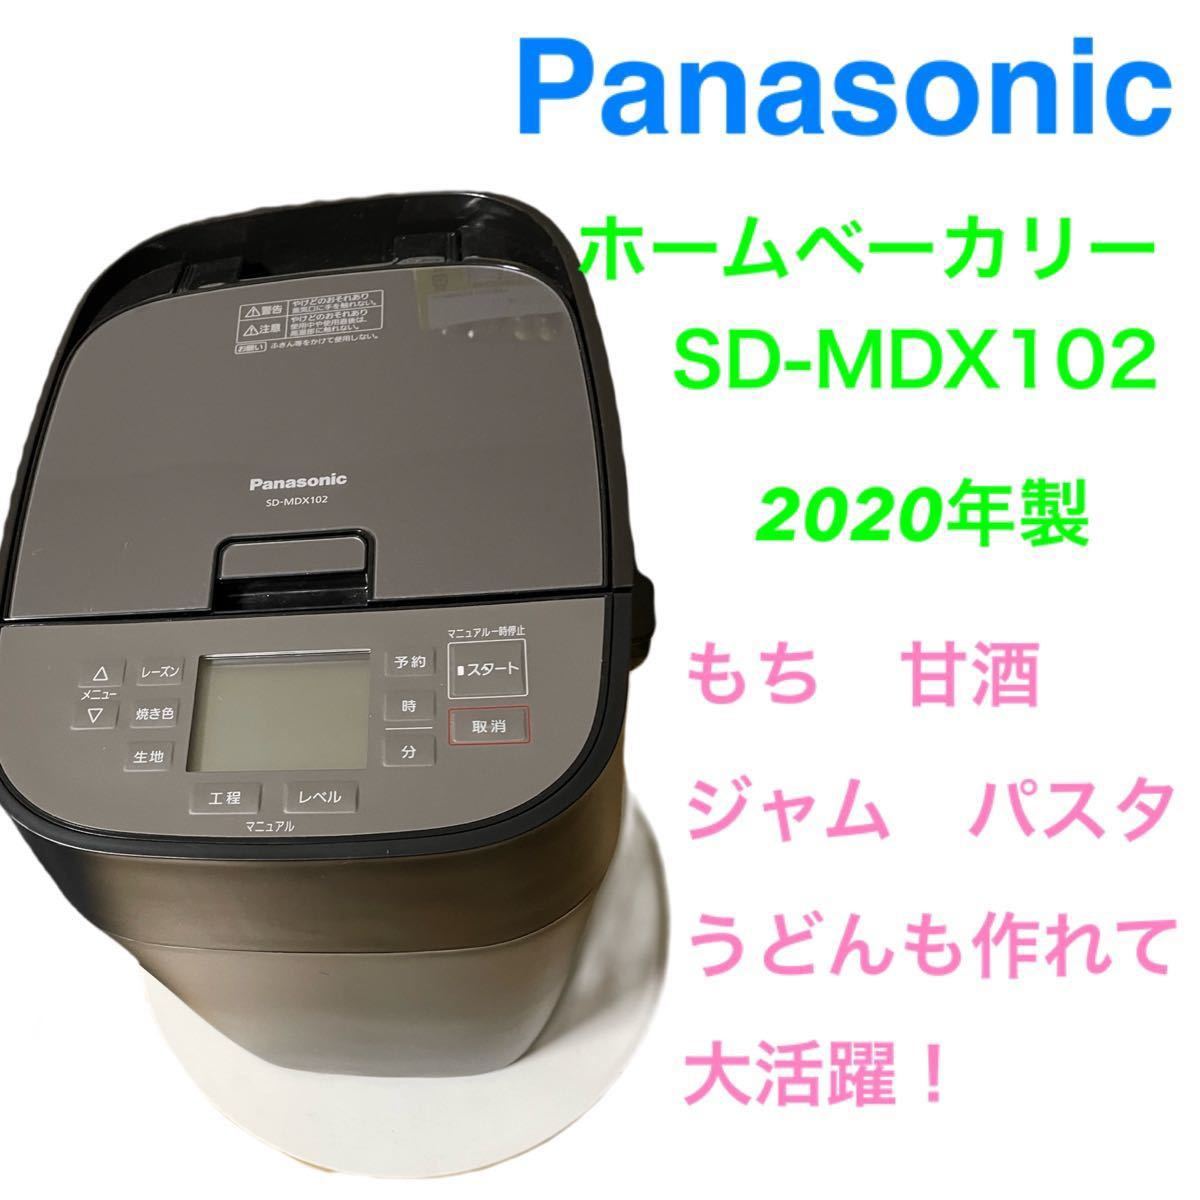 Panasonic SD-MDX102-K ホームベーカリー 1斤タイプ 41オートメニュー おうち乃が美対応